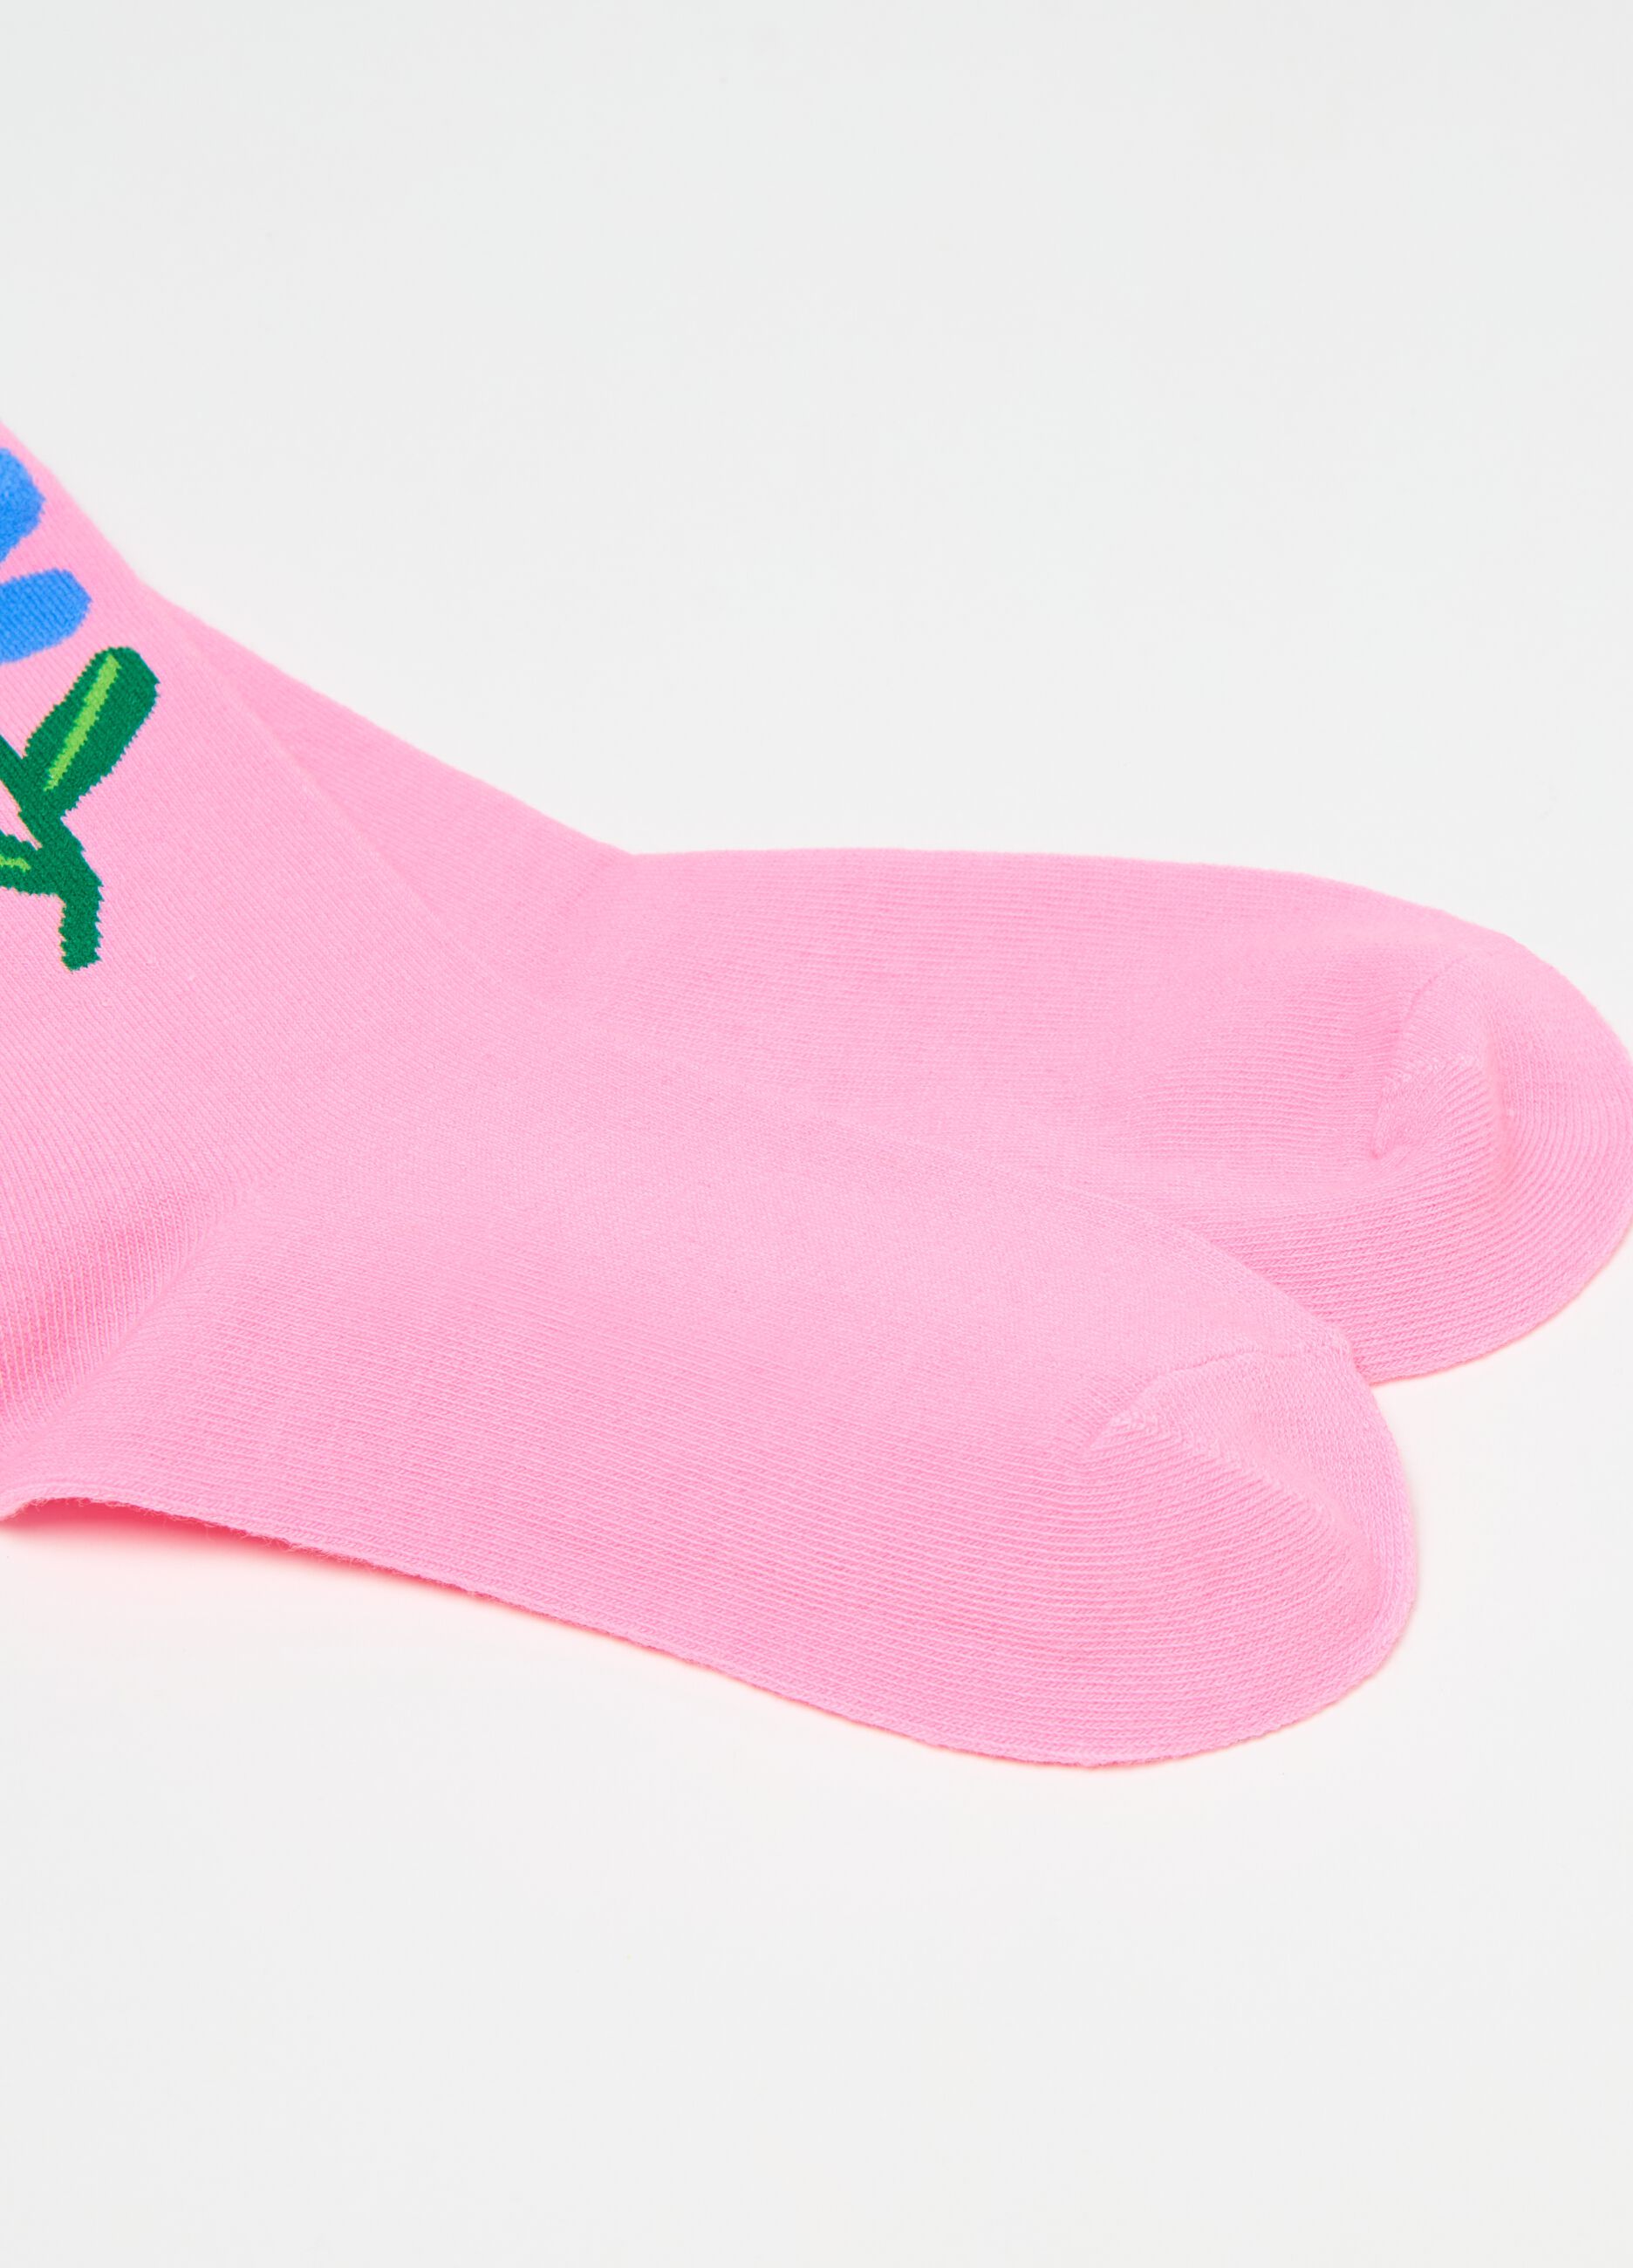 Socks with flower design